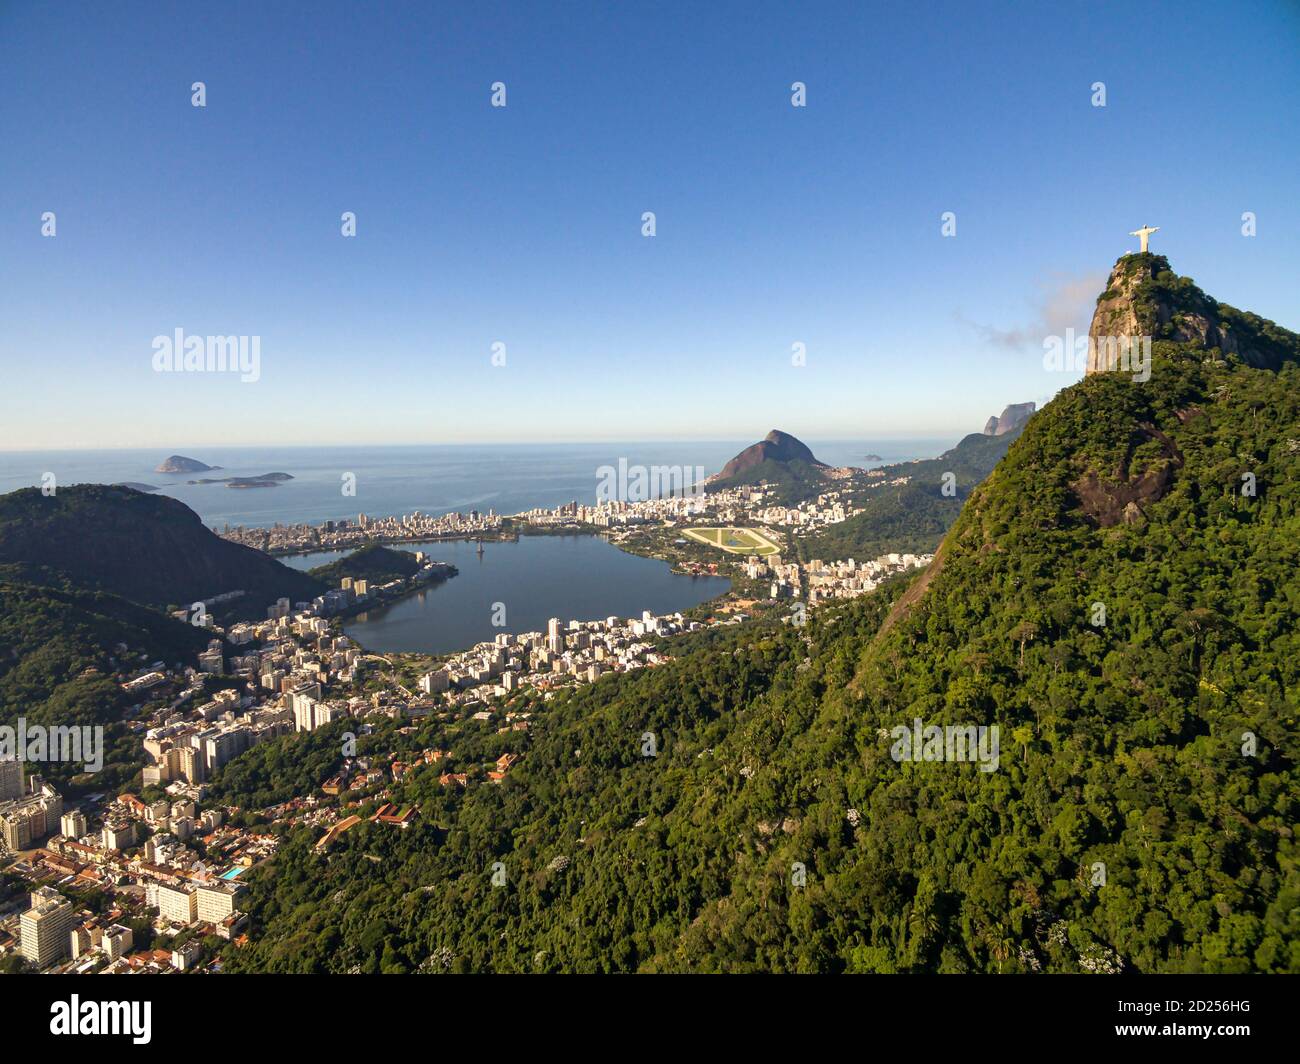 Rio de Janeiro city, Brazil. Stock Photo